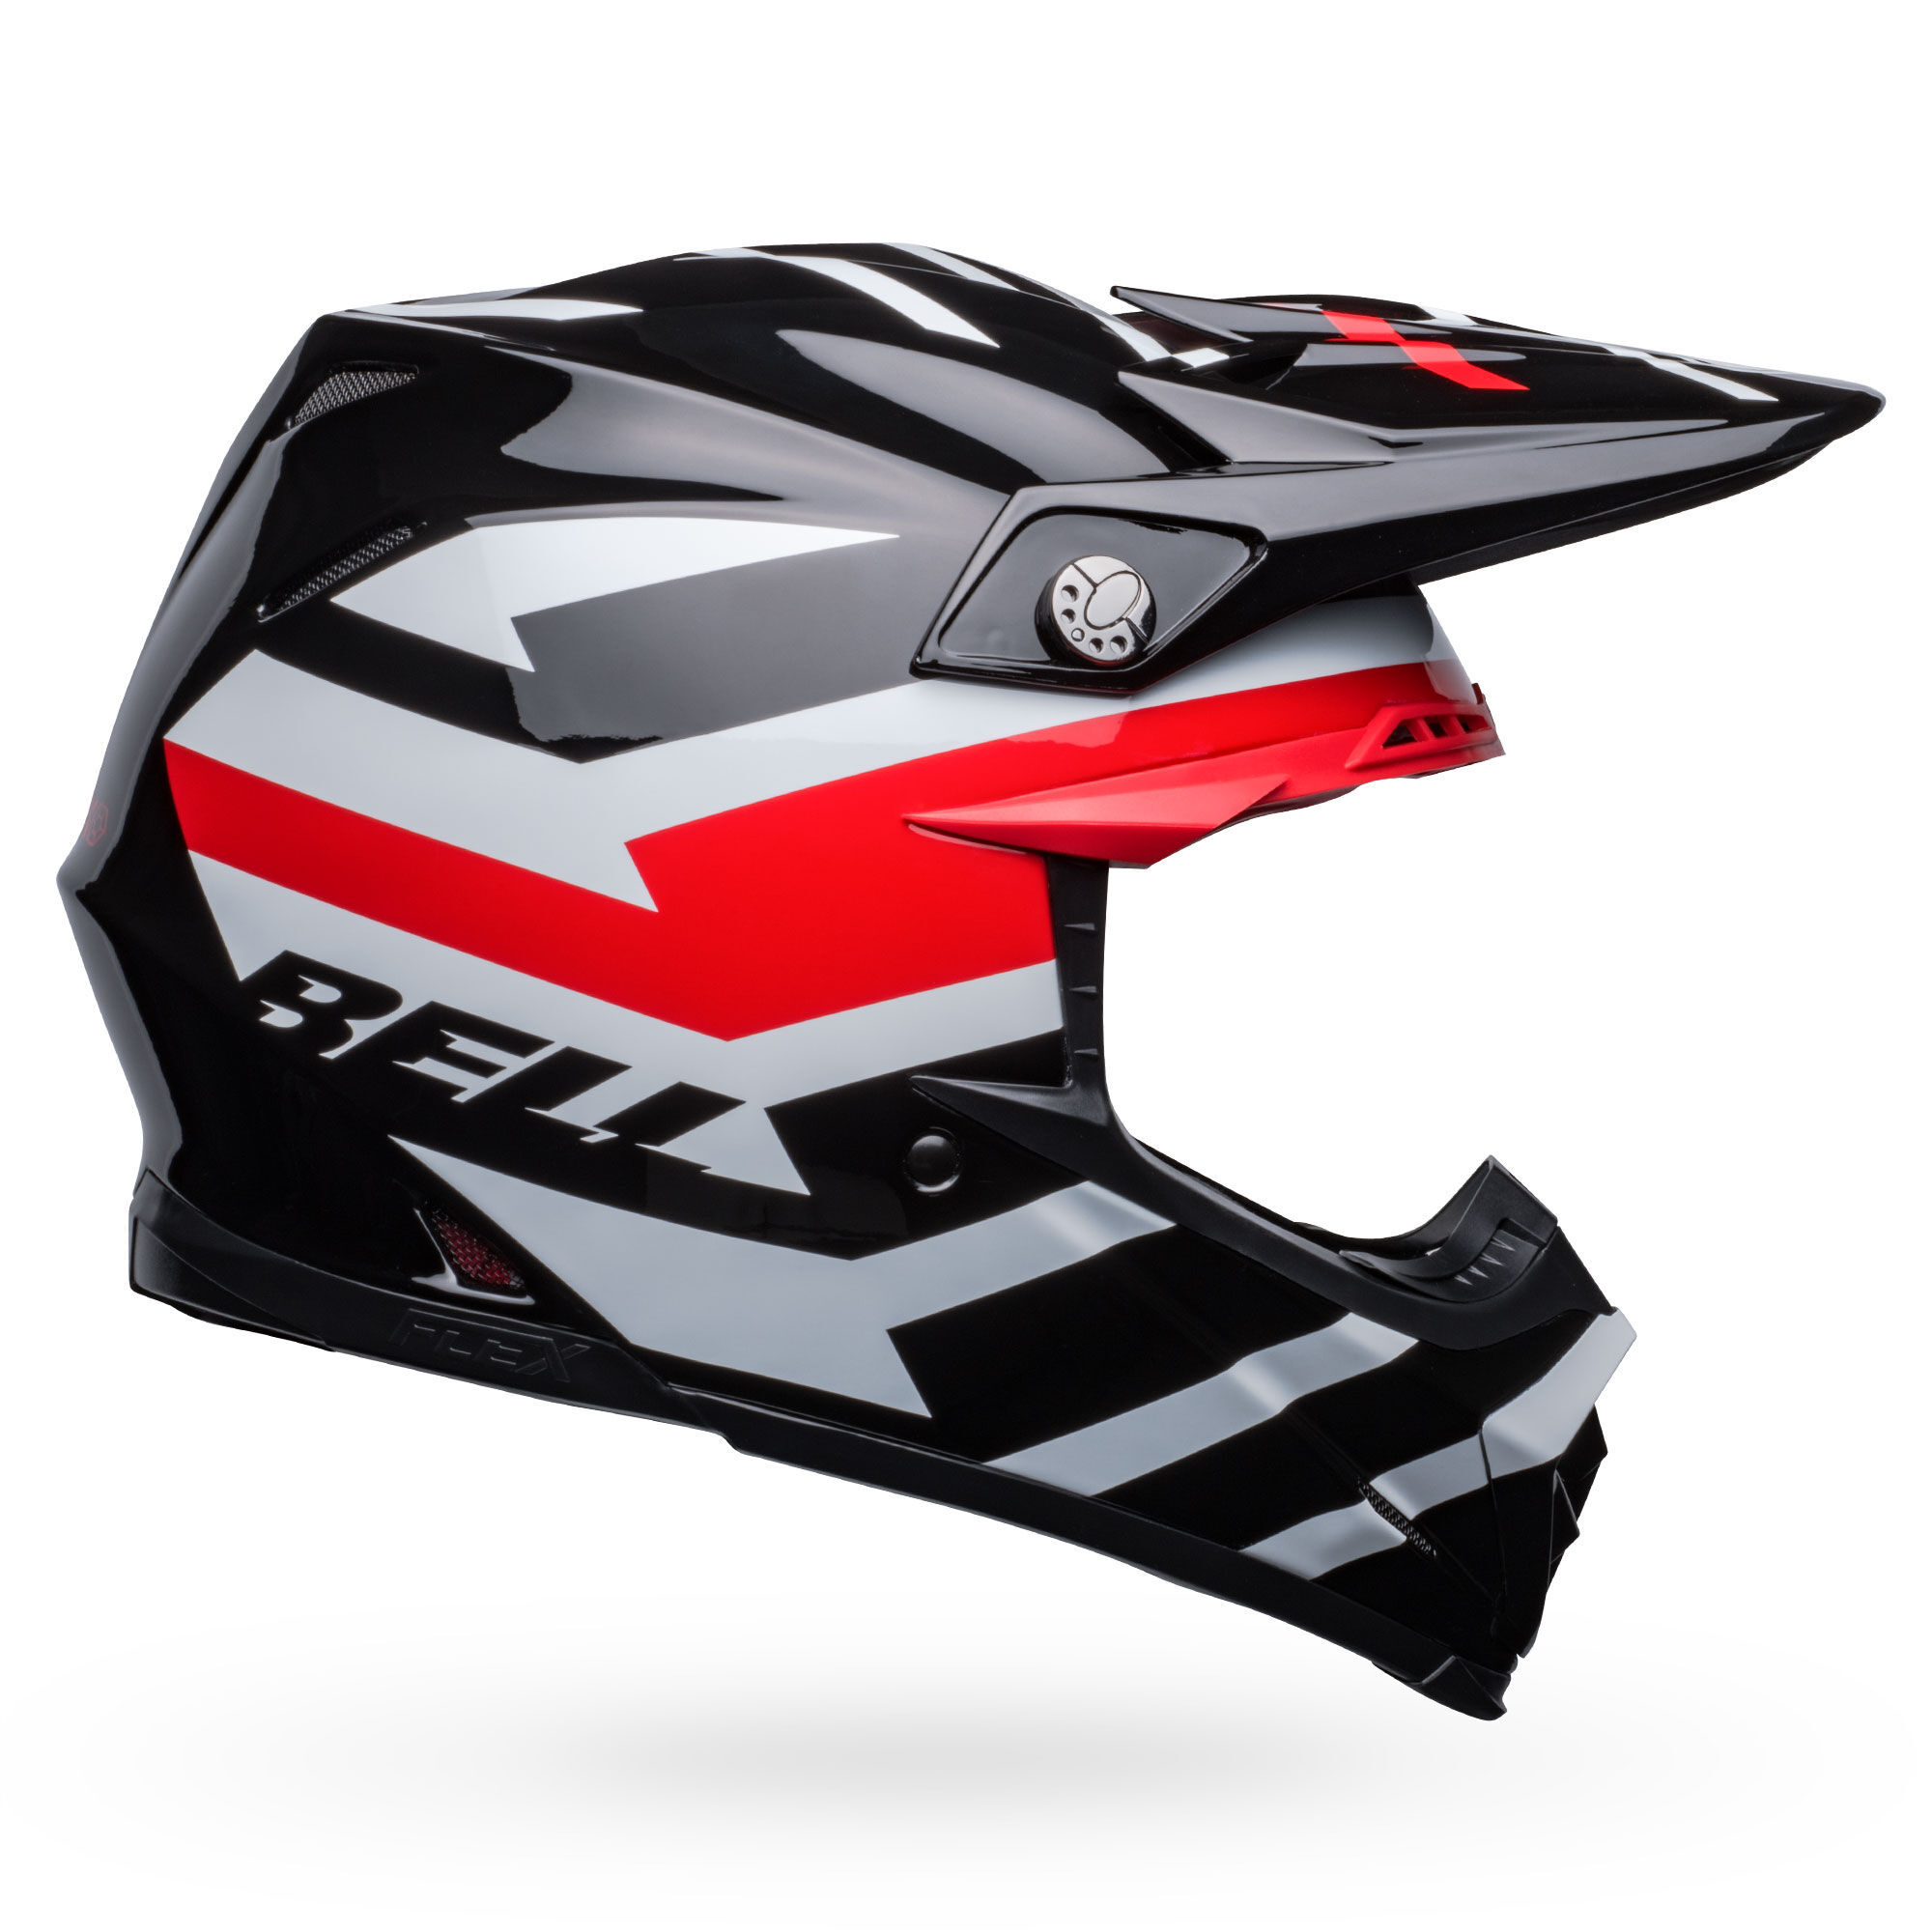 Moto-9S Flex | Bell Helmets